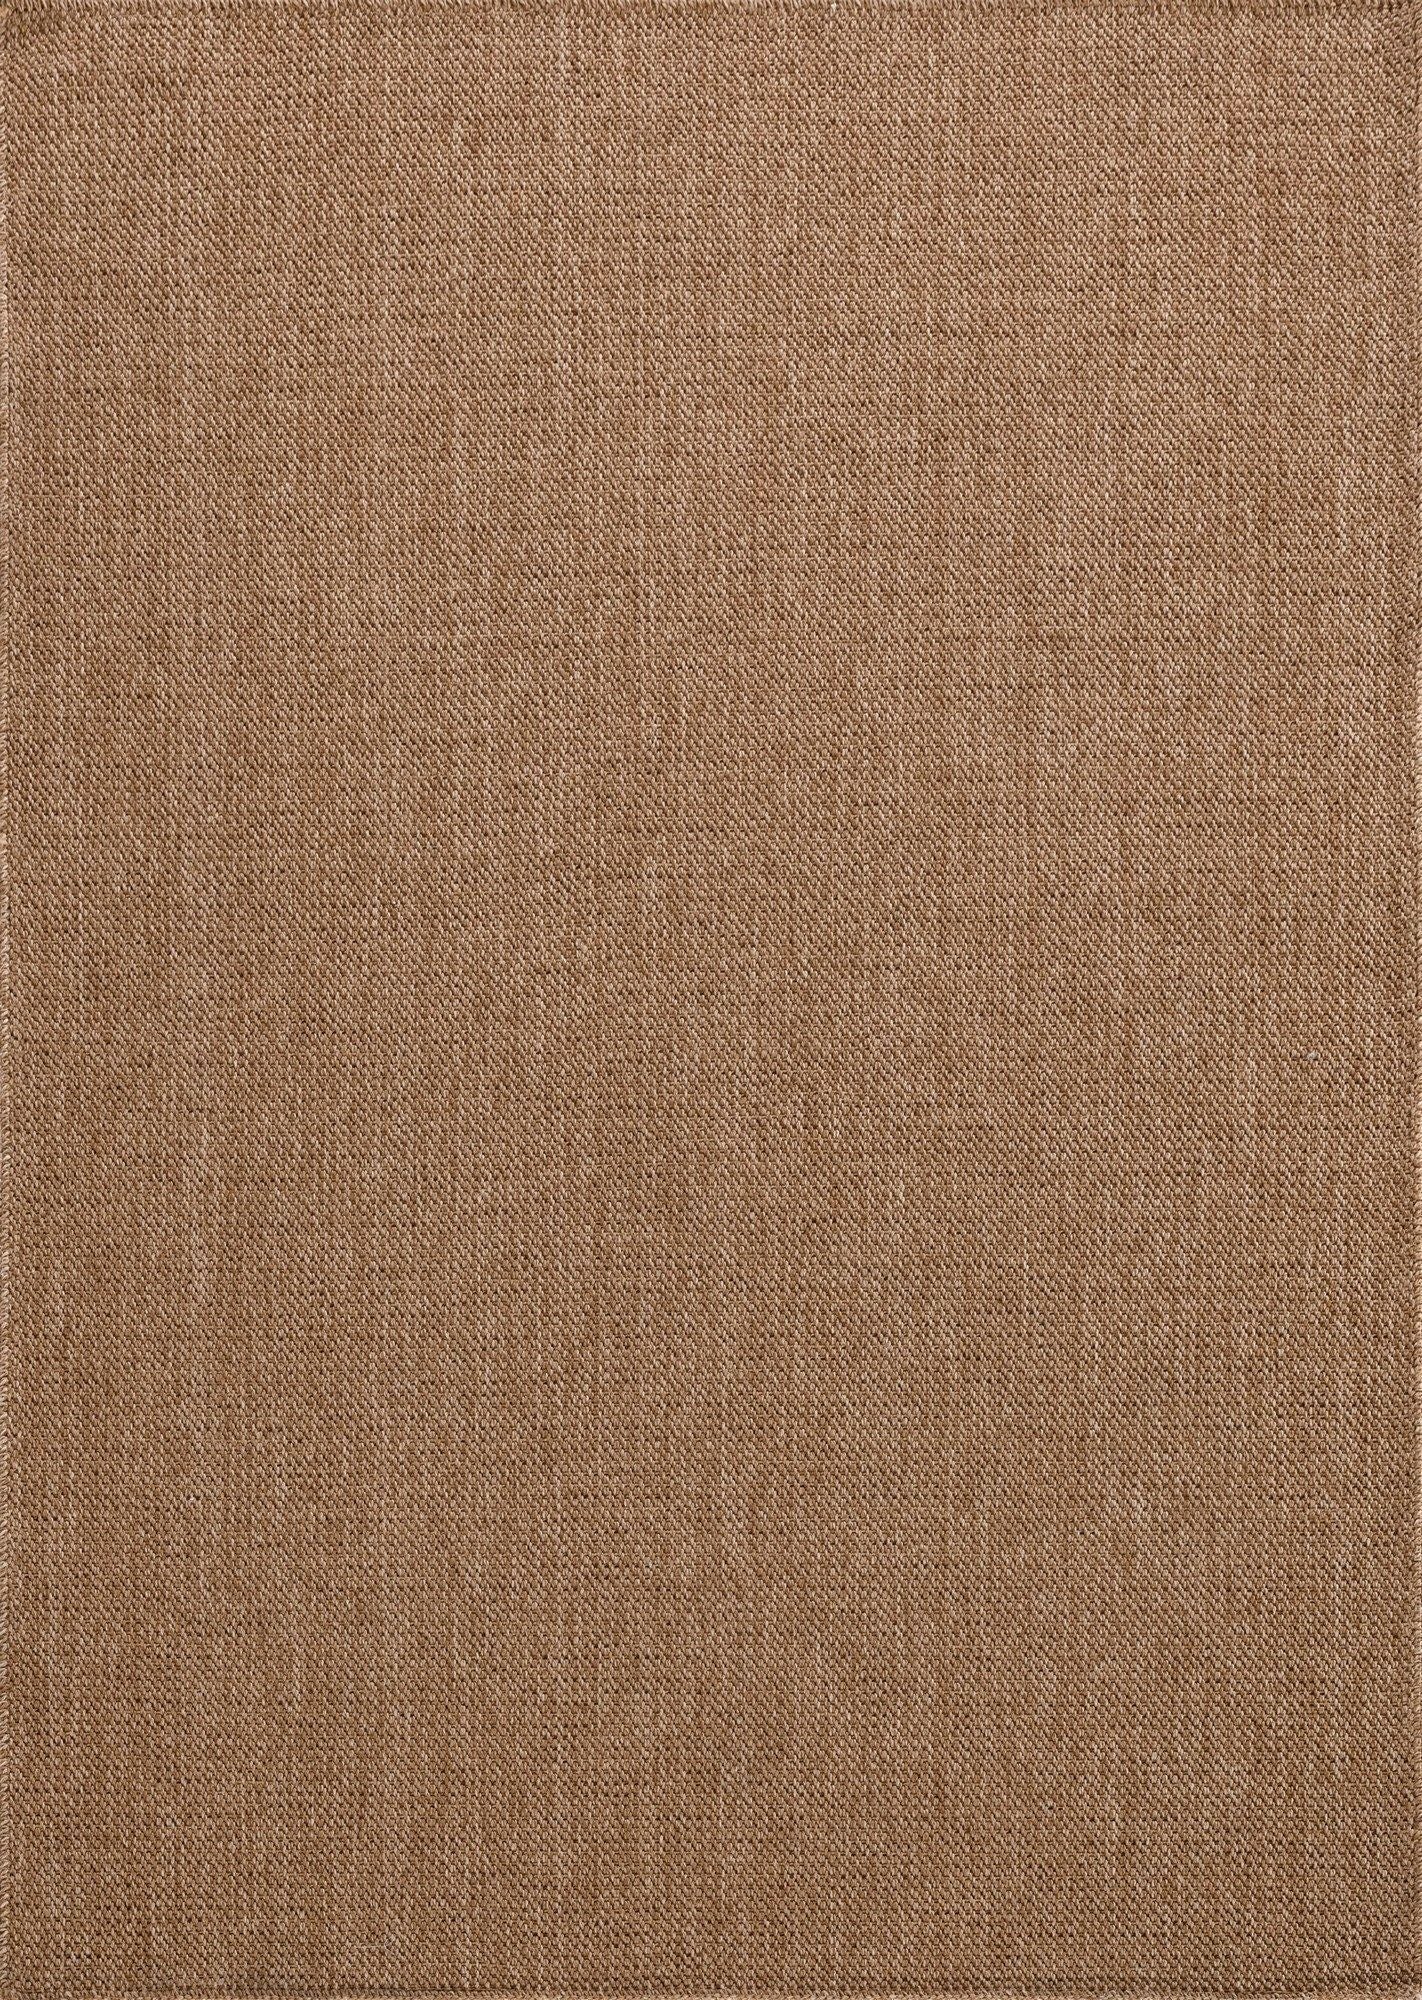 0604 Jut - Brown - Carpet (80 x 300)